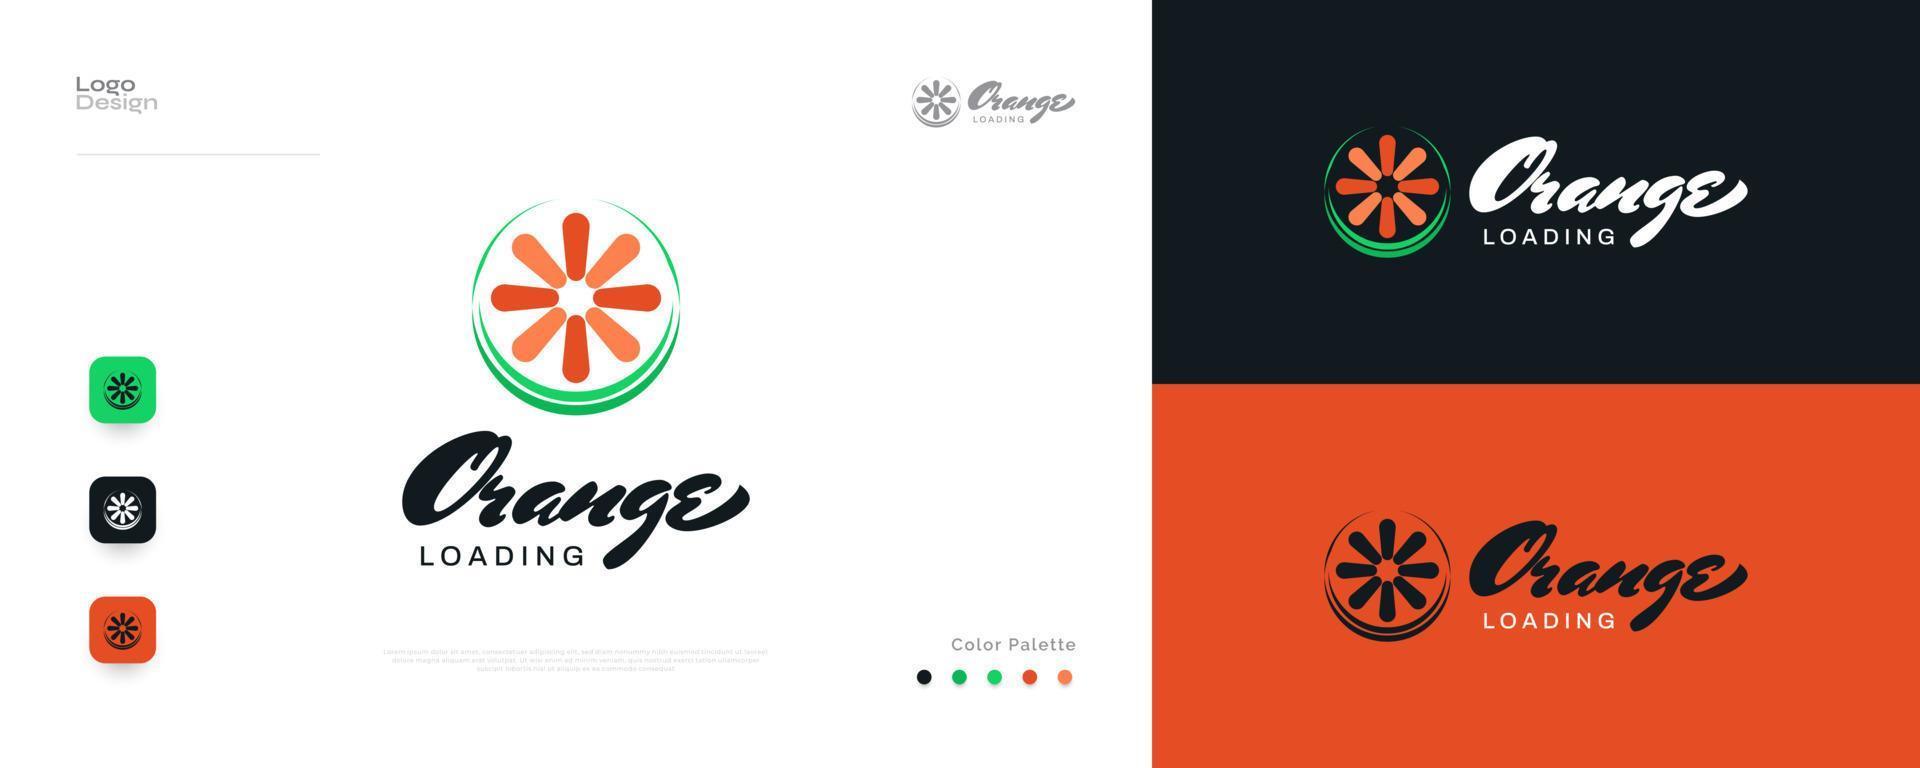 diseño de logotipo naranja simple y mínimo con concepto de carga. ideal para negocios, aplicaciones, empresas de nueva creación y logotipo de tecnología vector